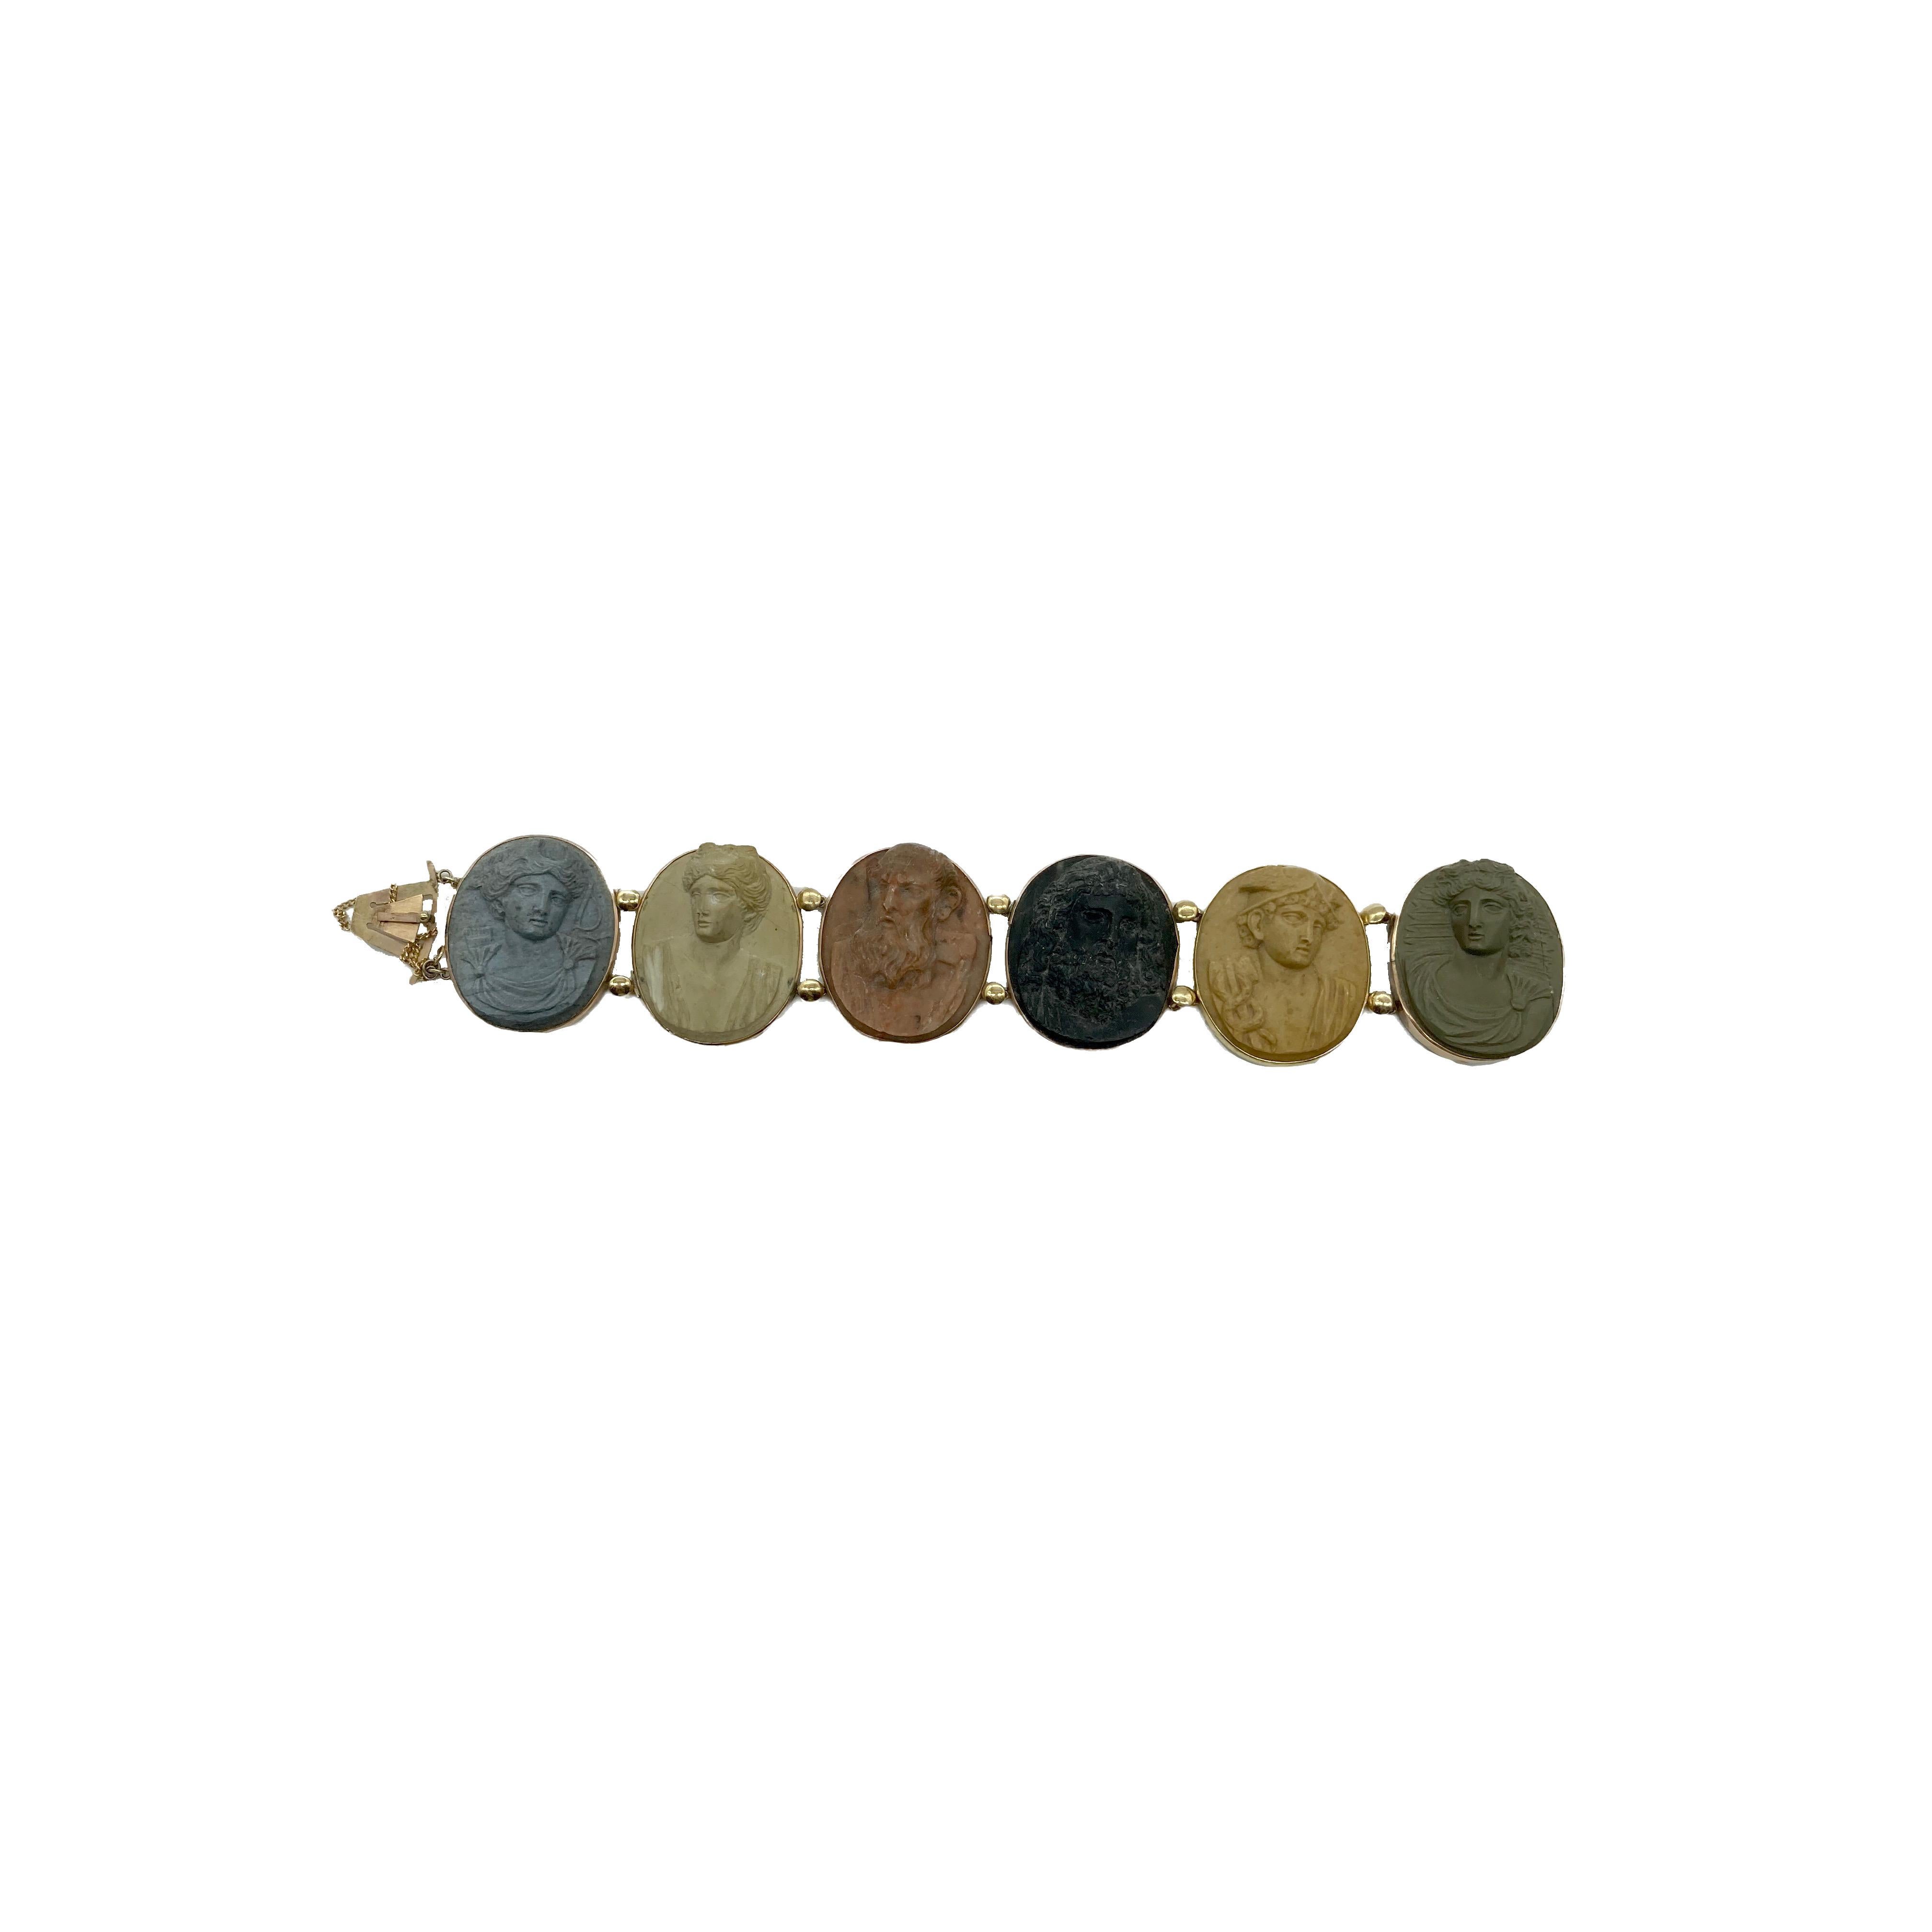 Superbe bracelet antique en camée de lave datant du début du XIXe siècle et représentant les divinités romaines Diane, Minerve, Vulcain, Jupiter et Mars. Fabriquées en Italie.